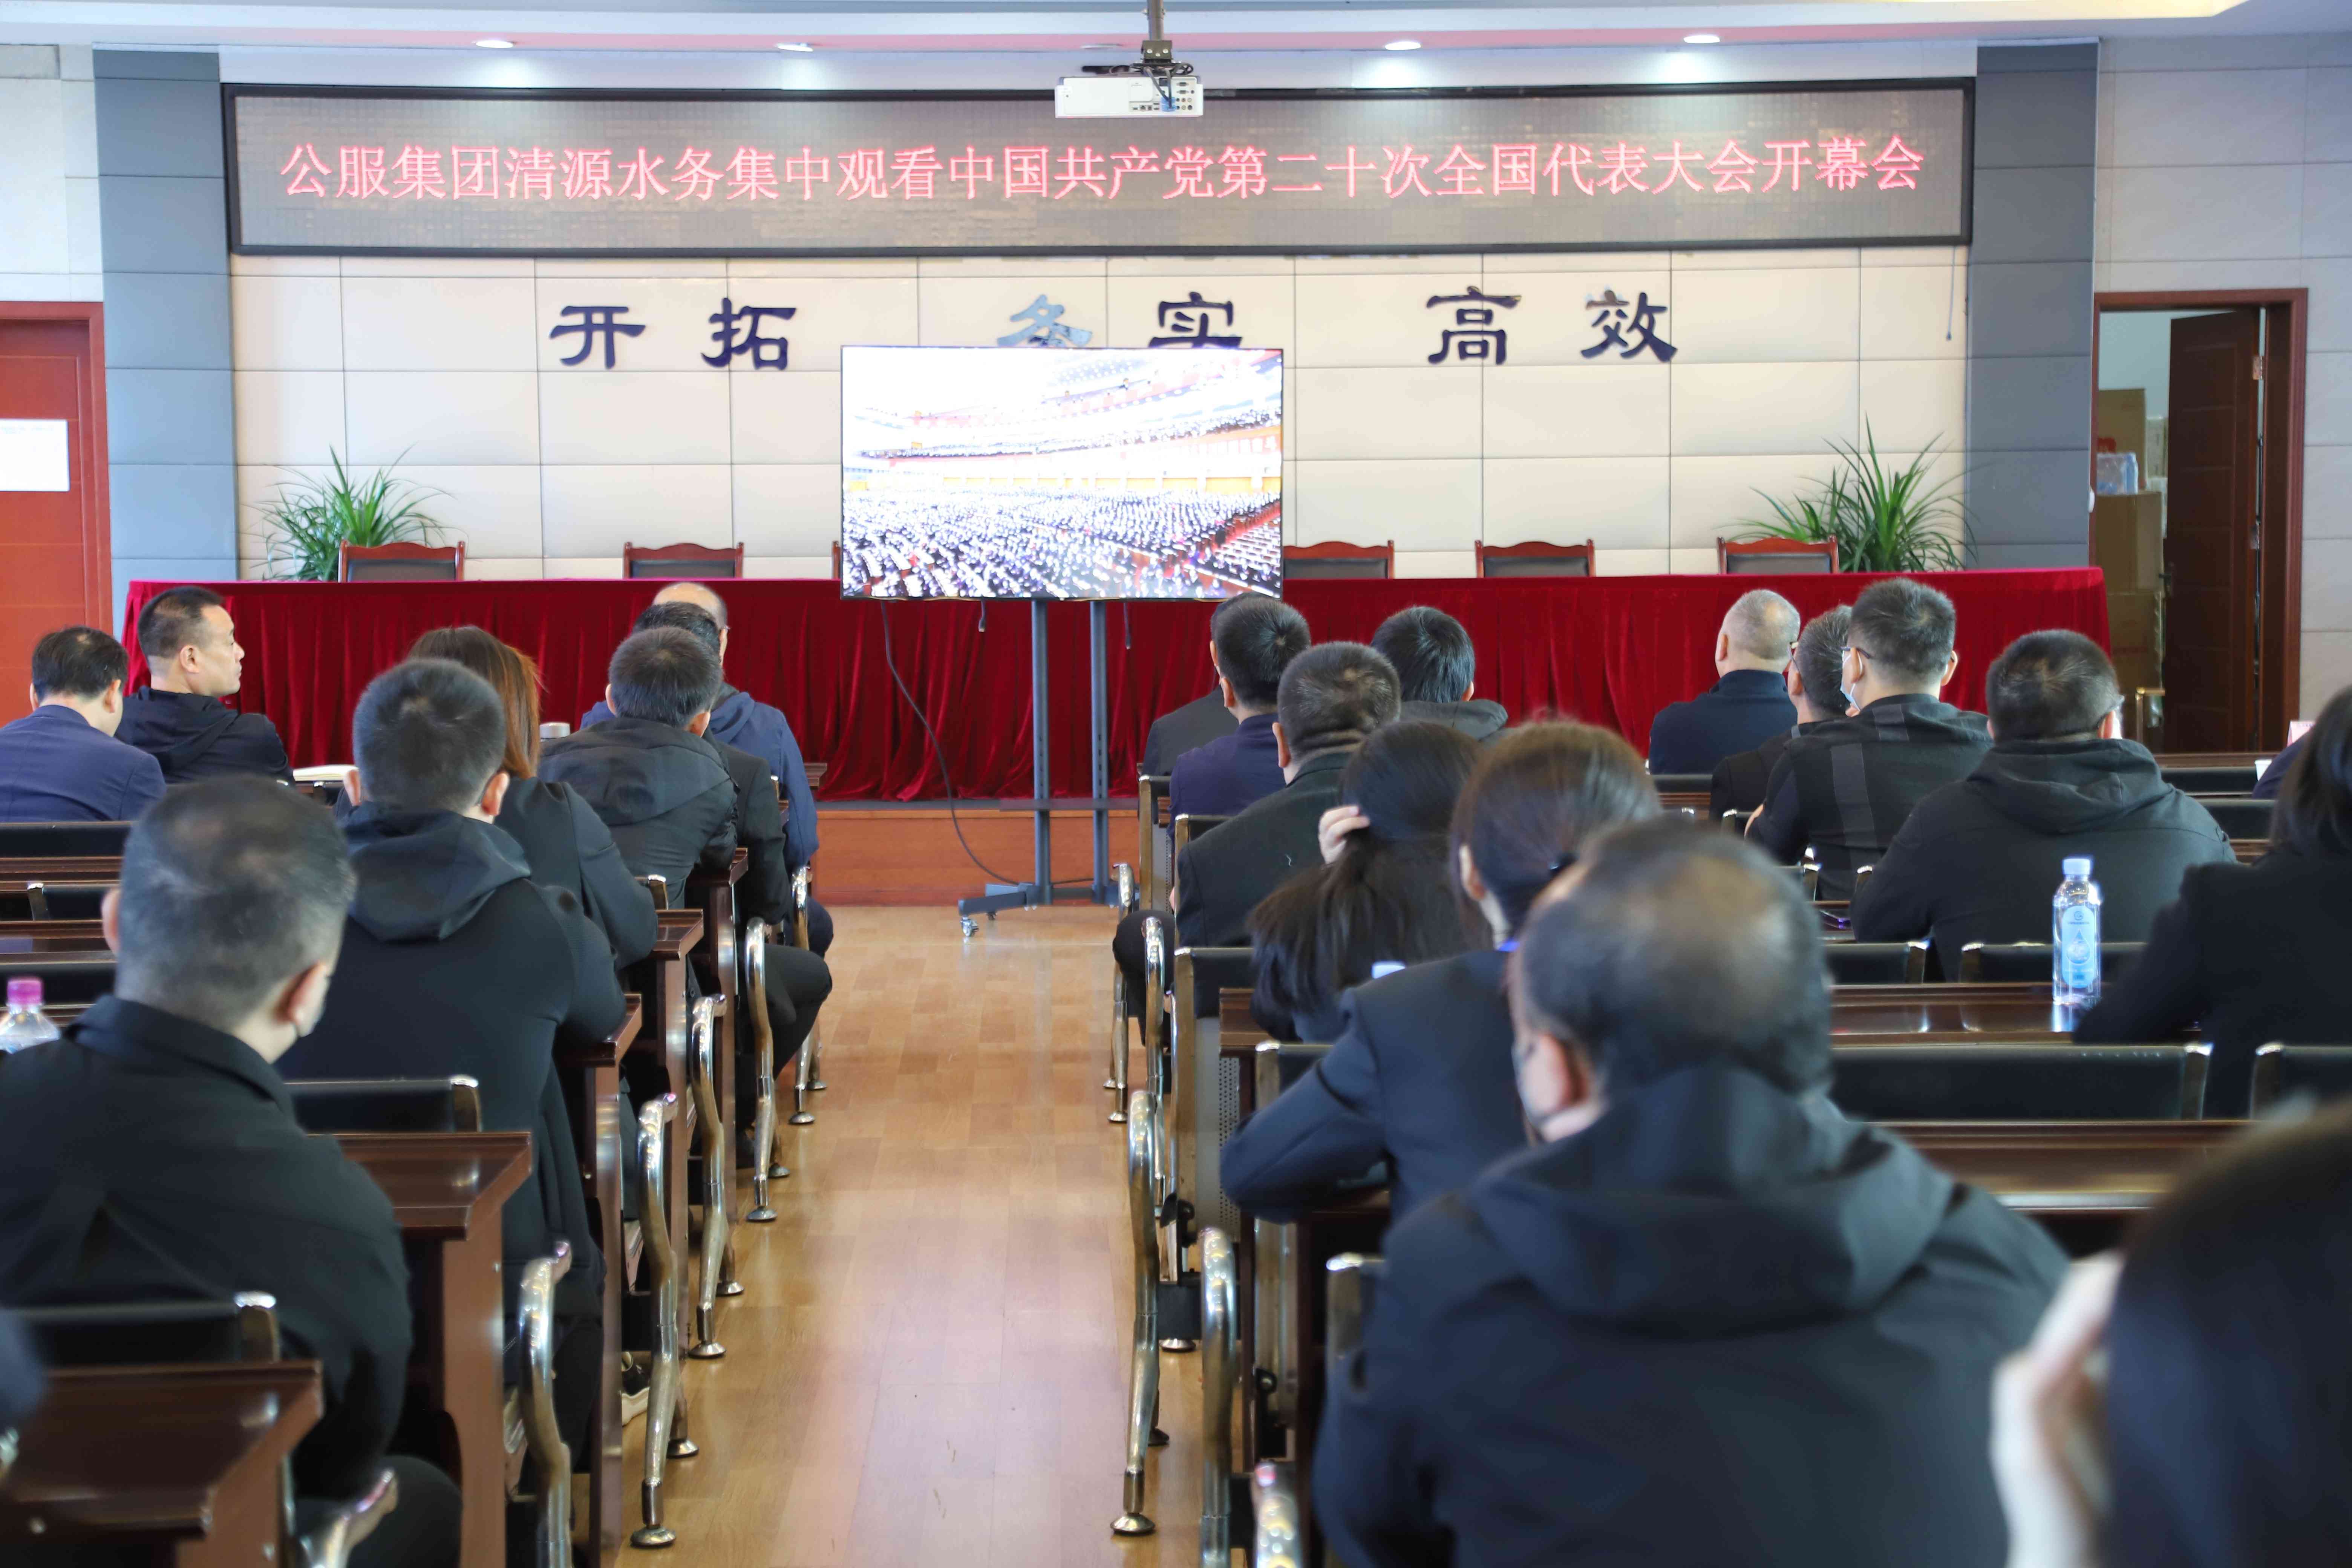 公服集團清源水務公司組織收看中國共產黨第二十次全國代表大會開幕會